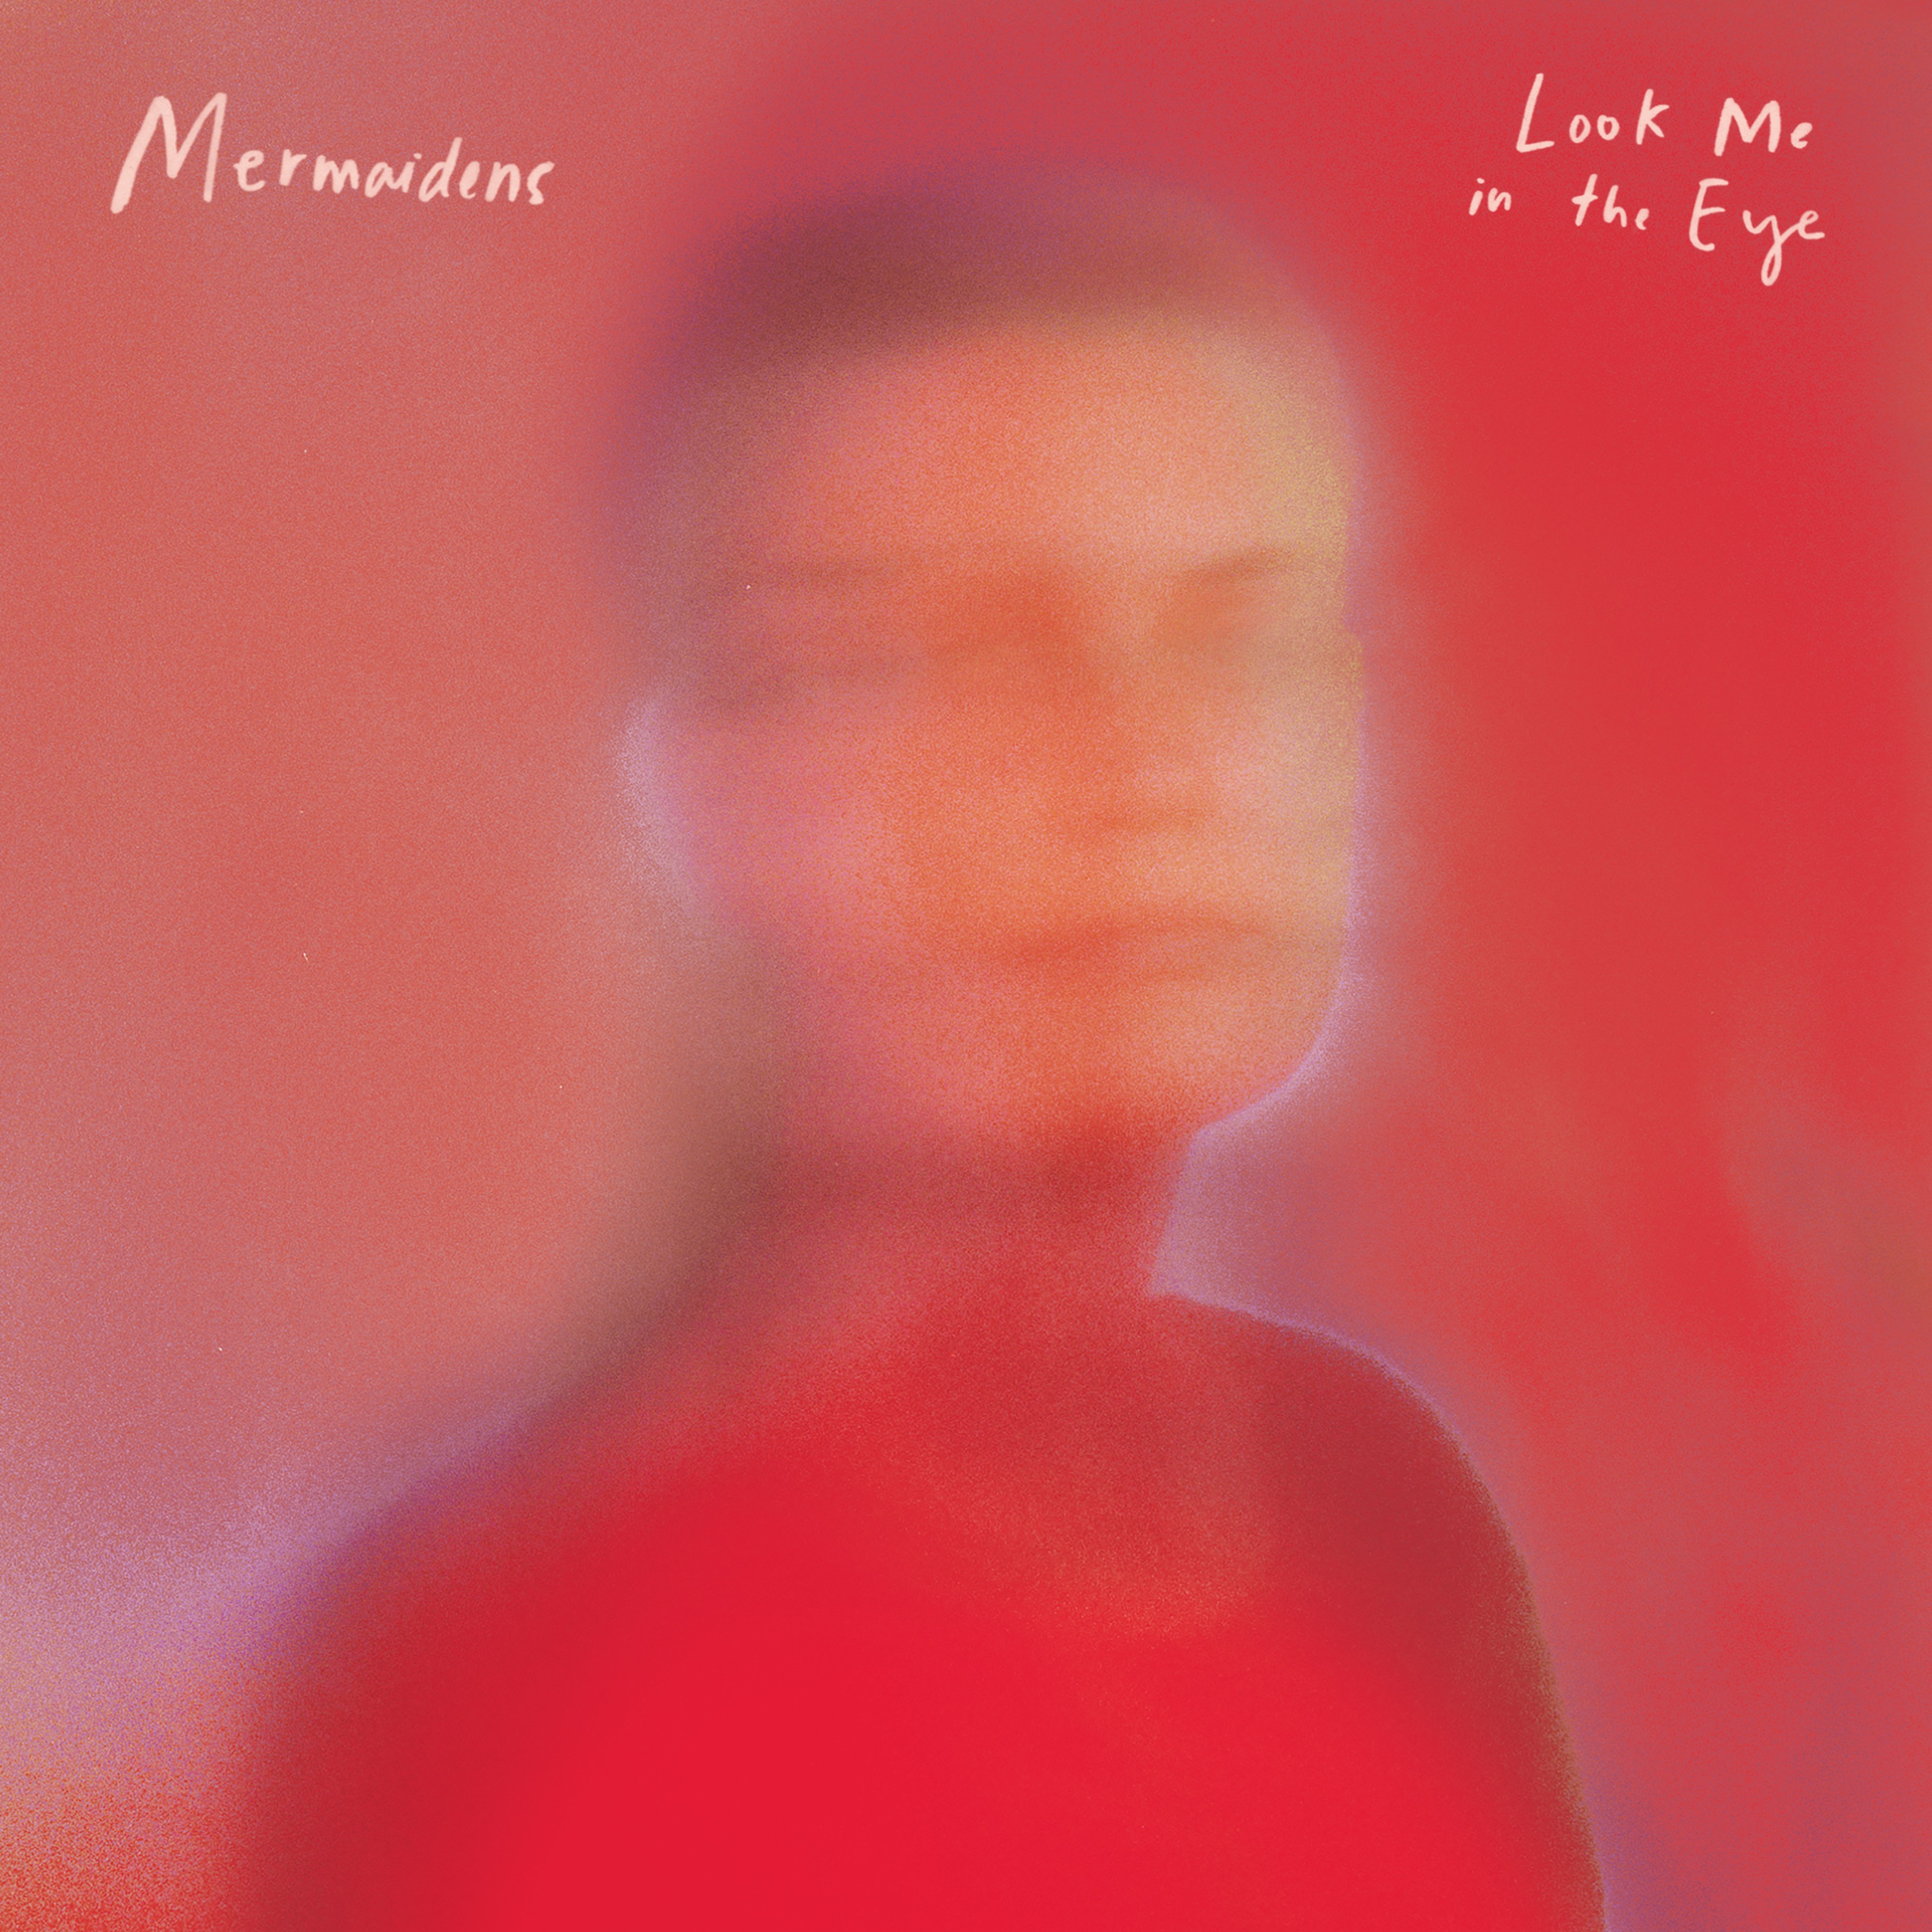 Mermaidens - Look Me in the Eye album cover